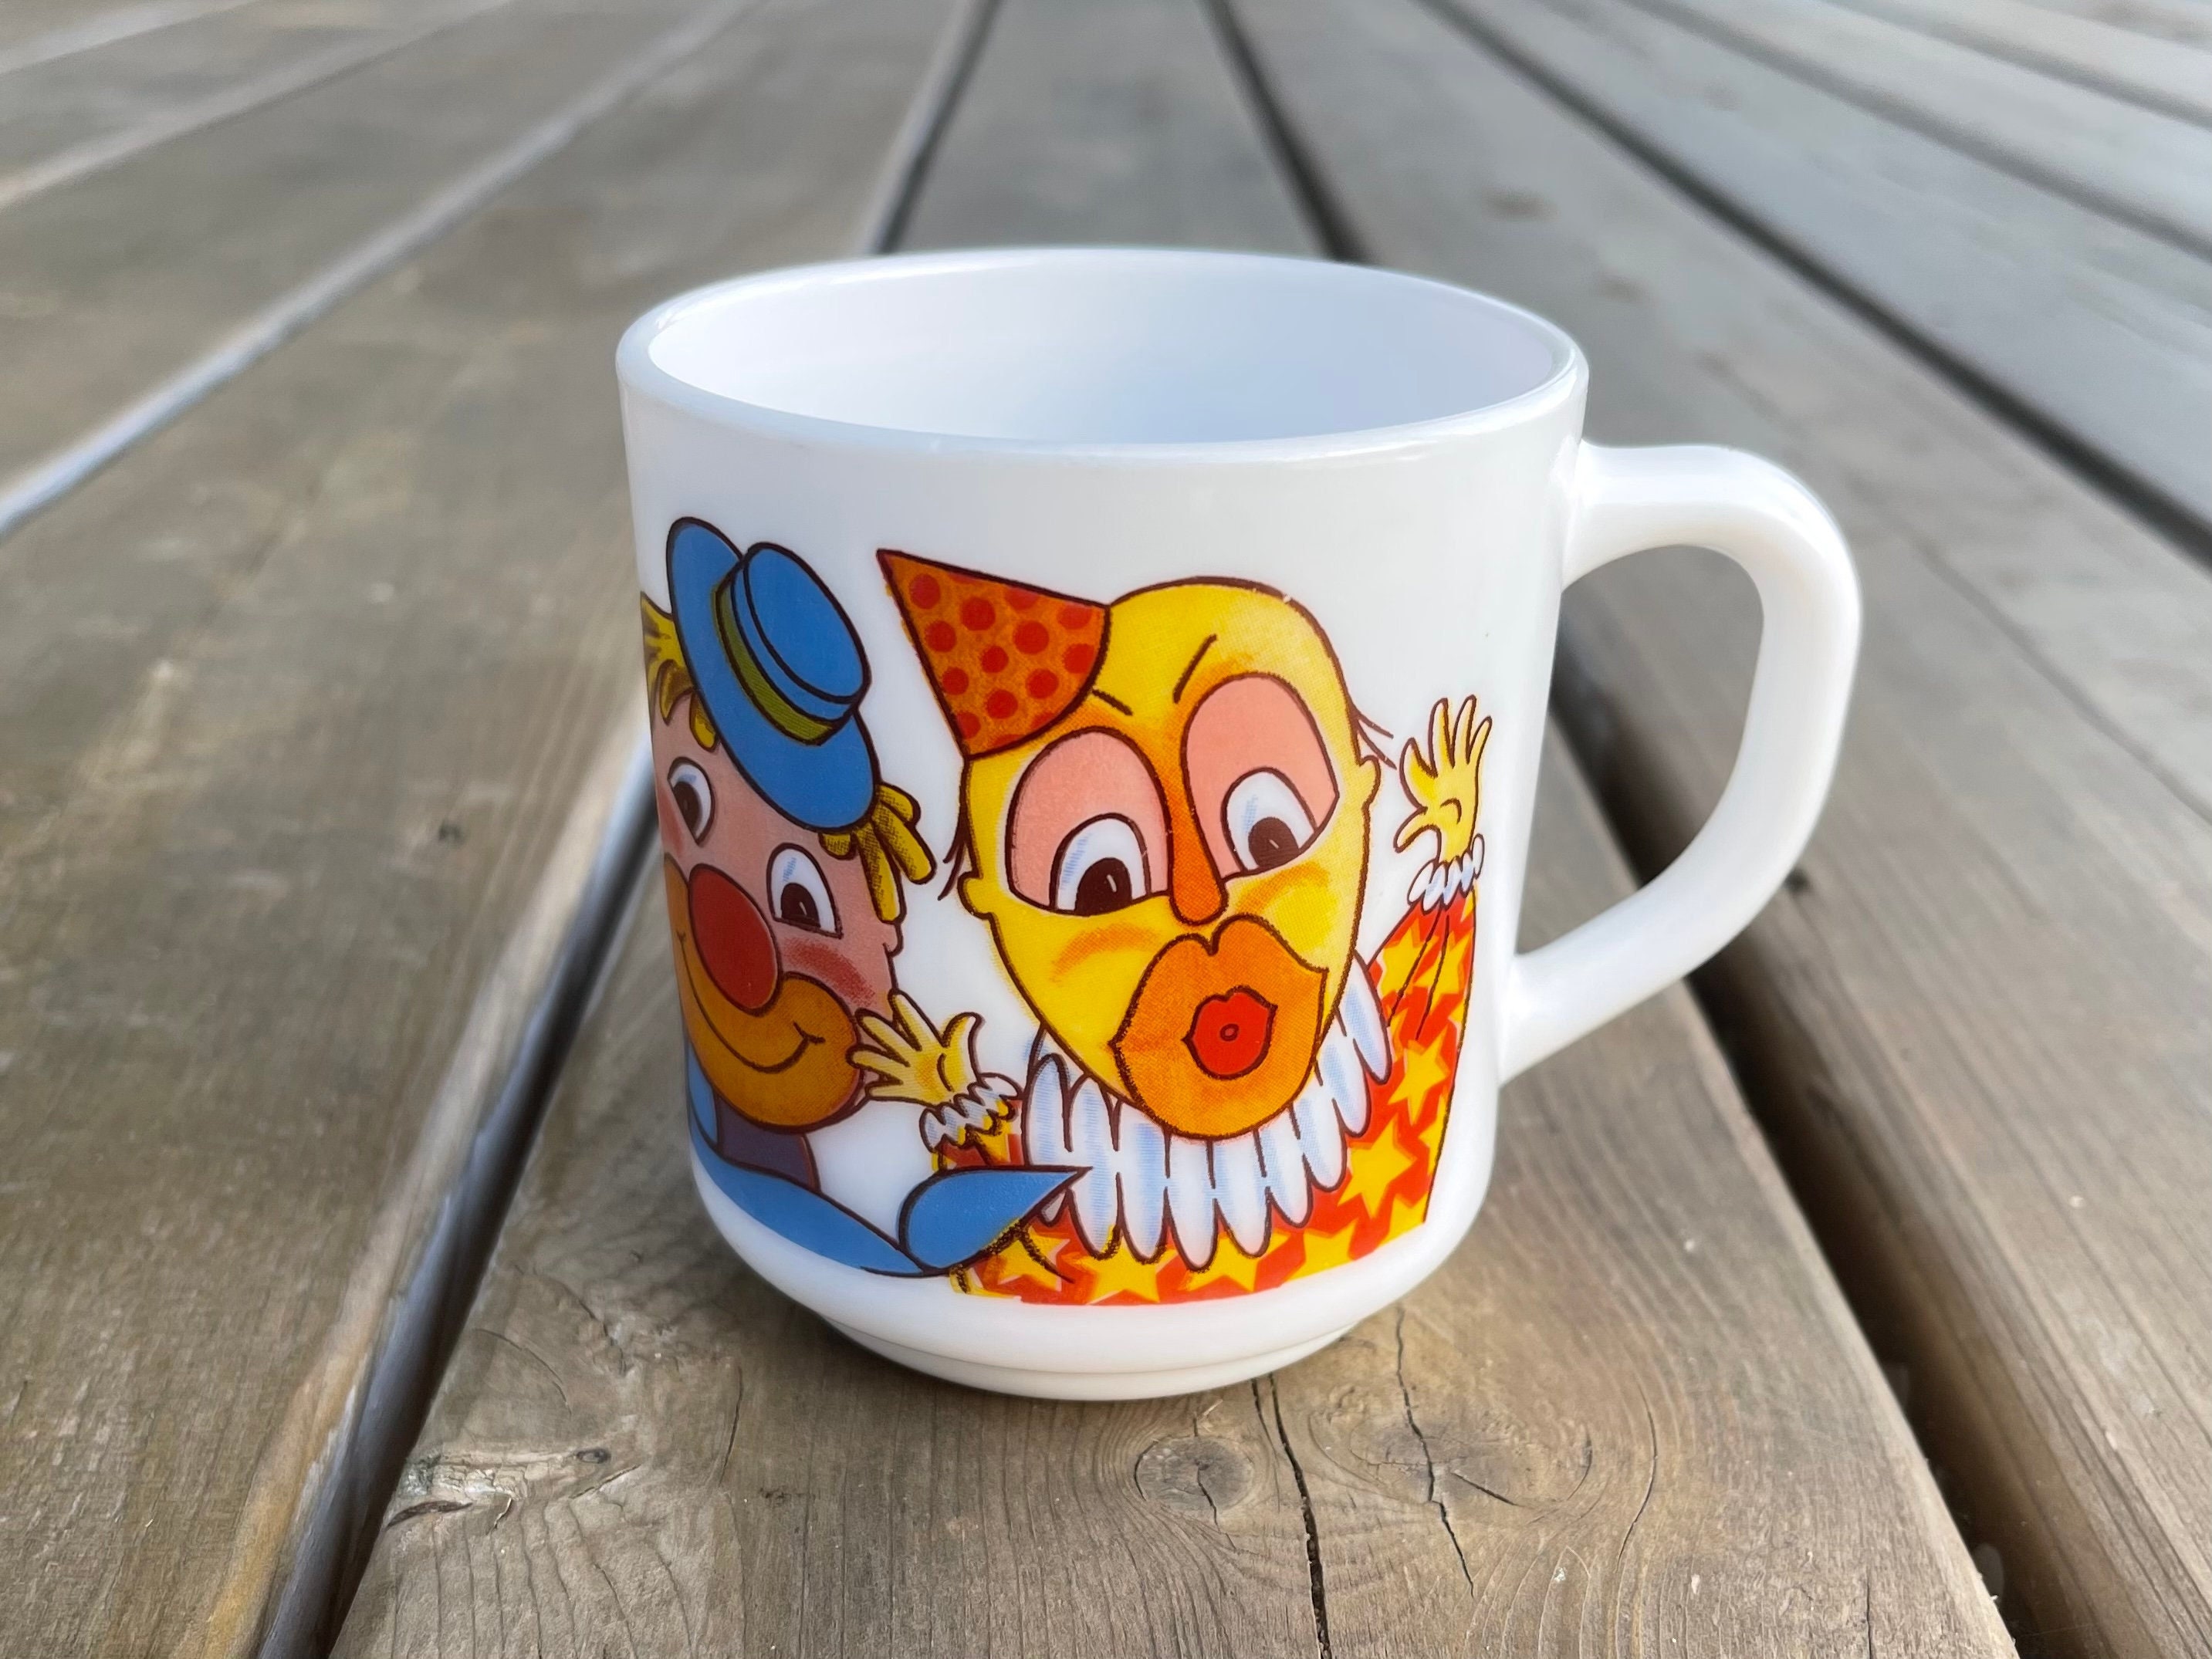 Cute Bear Mug, Animal Mug, Kawaii Mug, Clown Bear Mug, Gift for